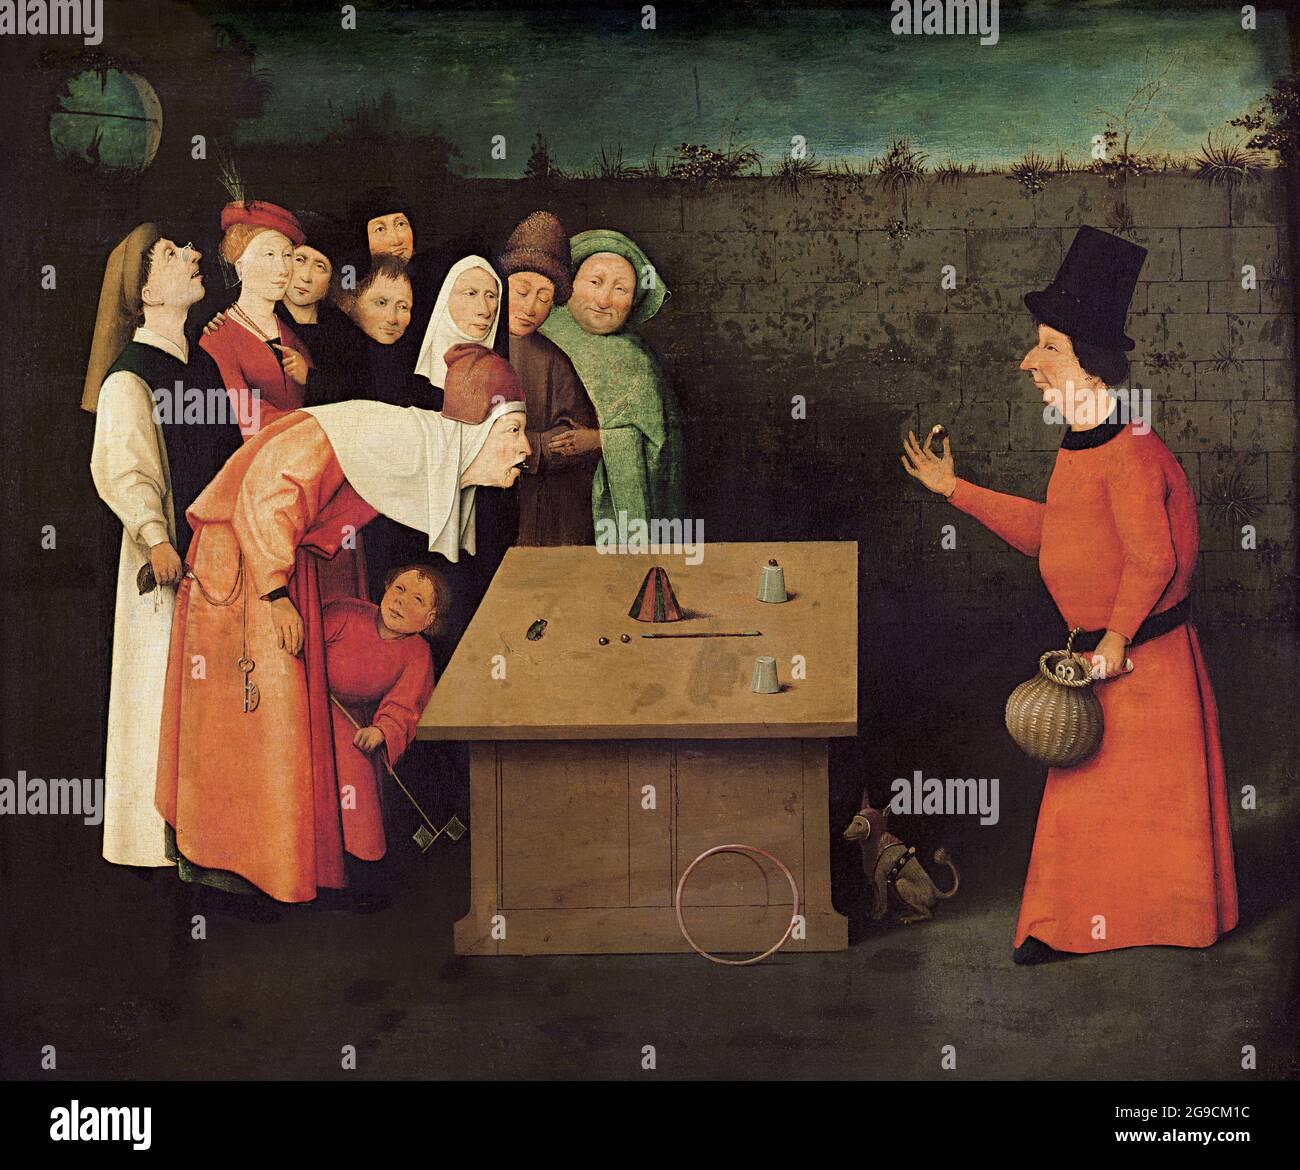 Titolo: Il Conjurer Creatore: Hieronymus Bosch Data: 1501 - 1505 Medium: Olio su legno dimensioni: 53 × 65 cm Località: St-Germain-en-Laye, Musée Municipal. Foto Stock